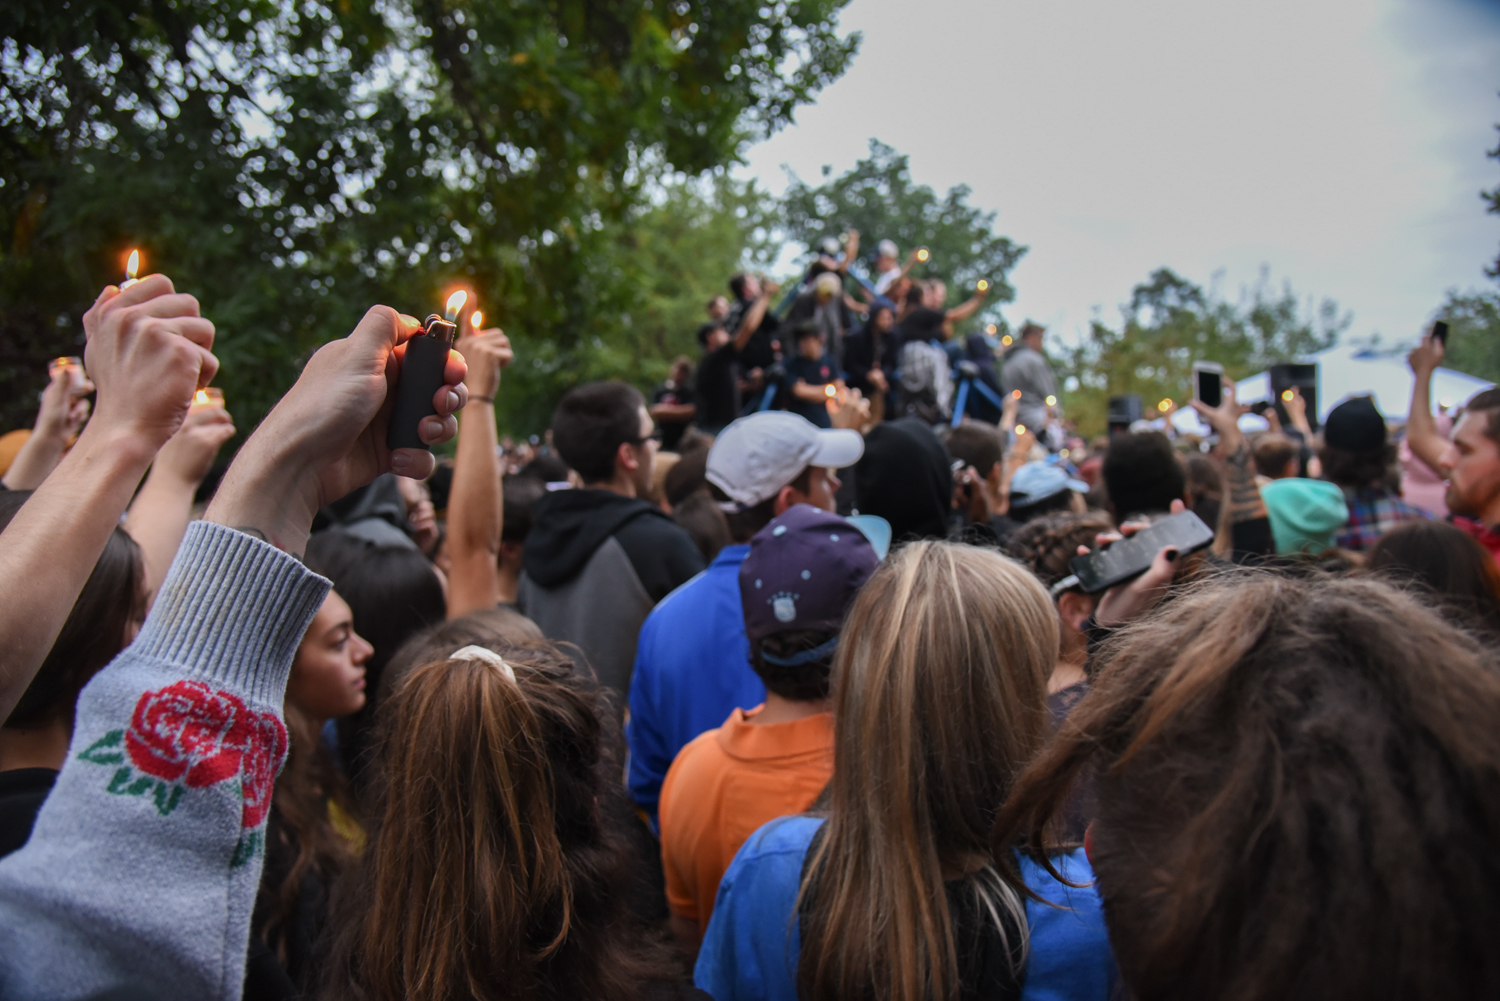 Hundreds gather at Blue Slide Park for Mac Miller vigil